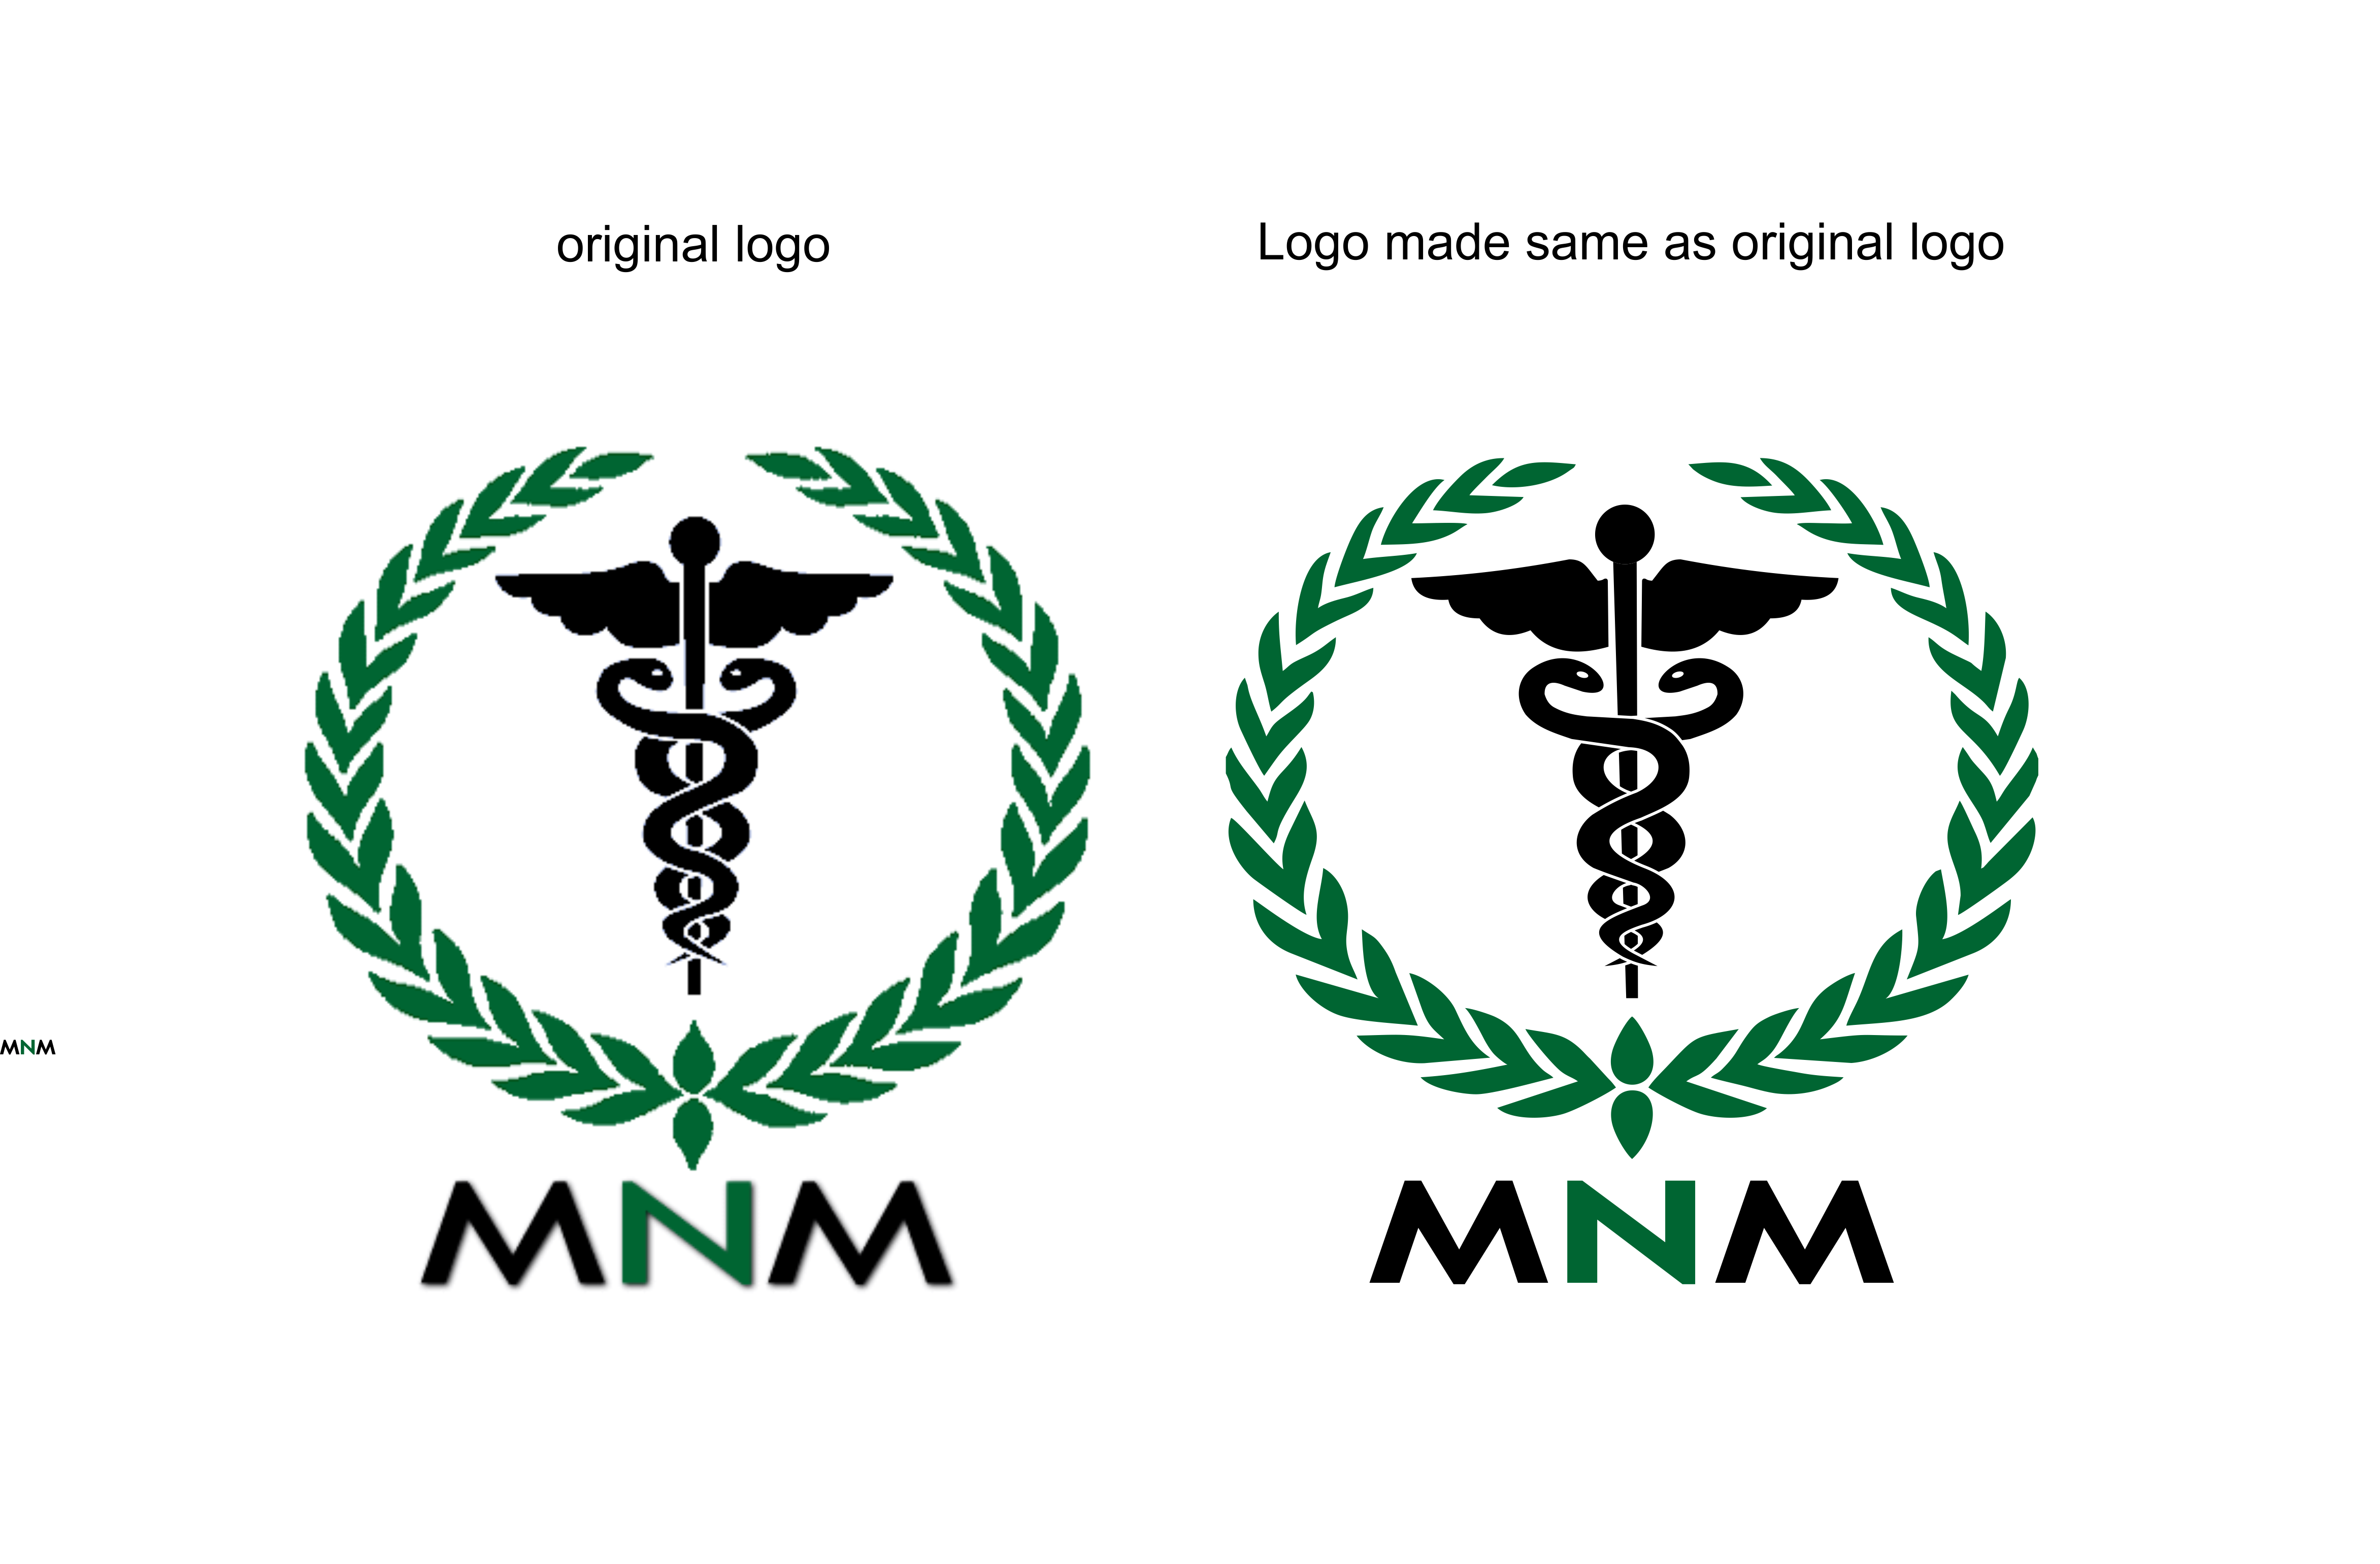 logo same as original.png